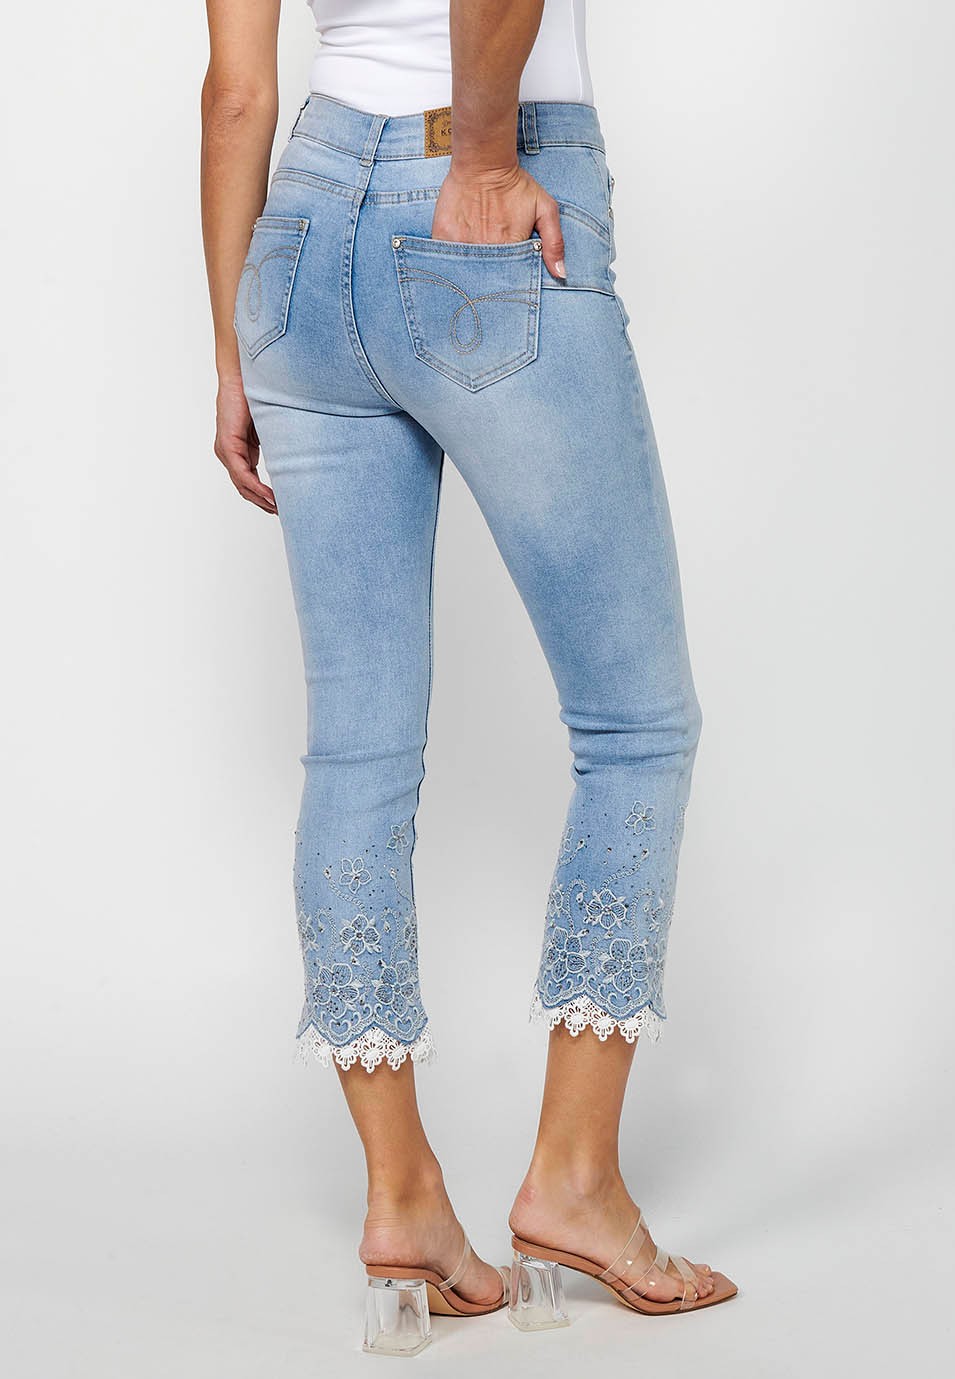 Pantalon long en jean slim avec fermeture éclair sur le devant et détails brodés de fleurs bleu clair pour femme 6